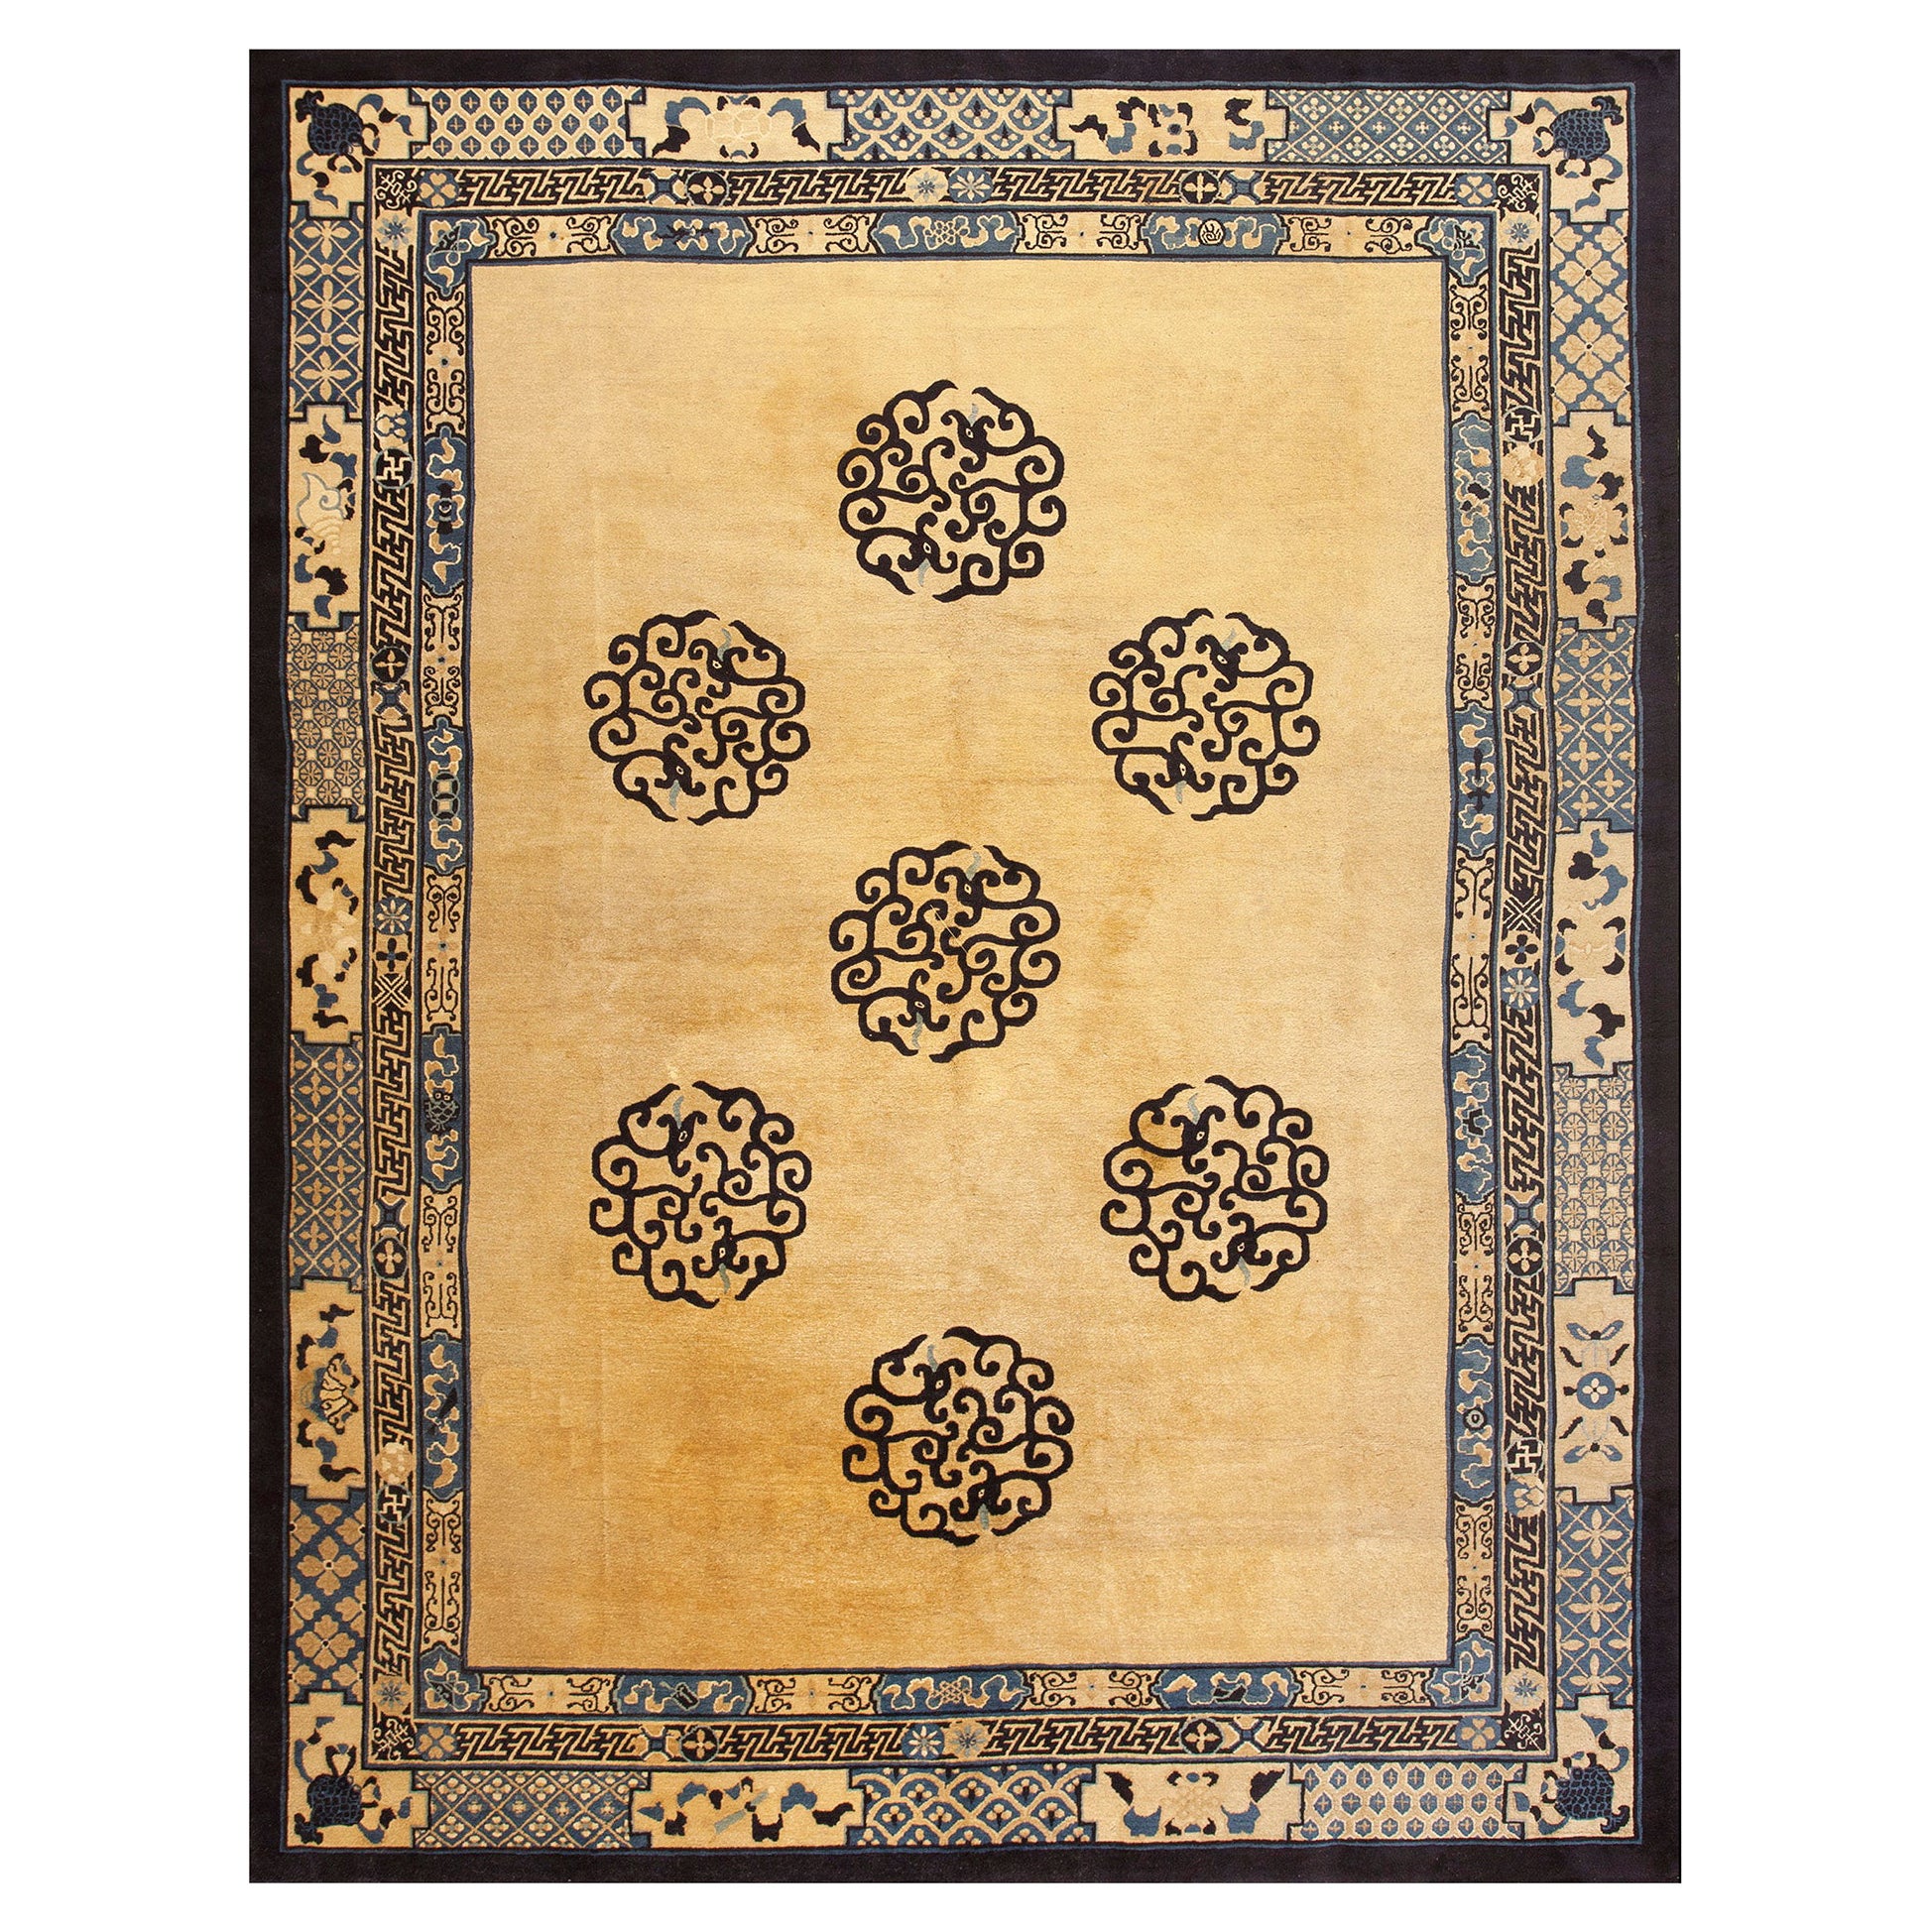 Chinesischer Pekinger Teppich des 19. Jahrhunderts ( 9' x 11'8'' - 275 x 355 )